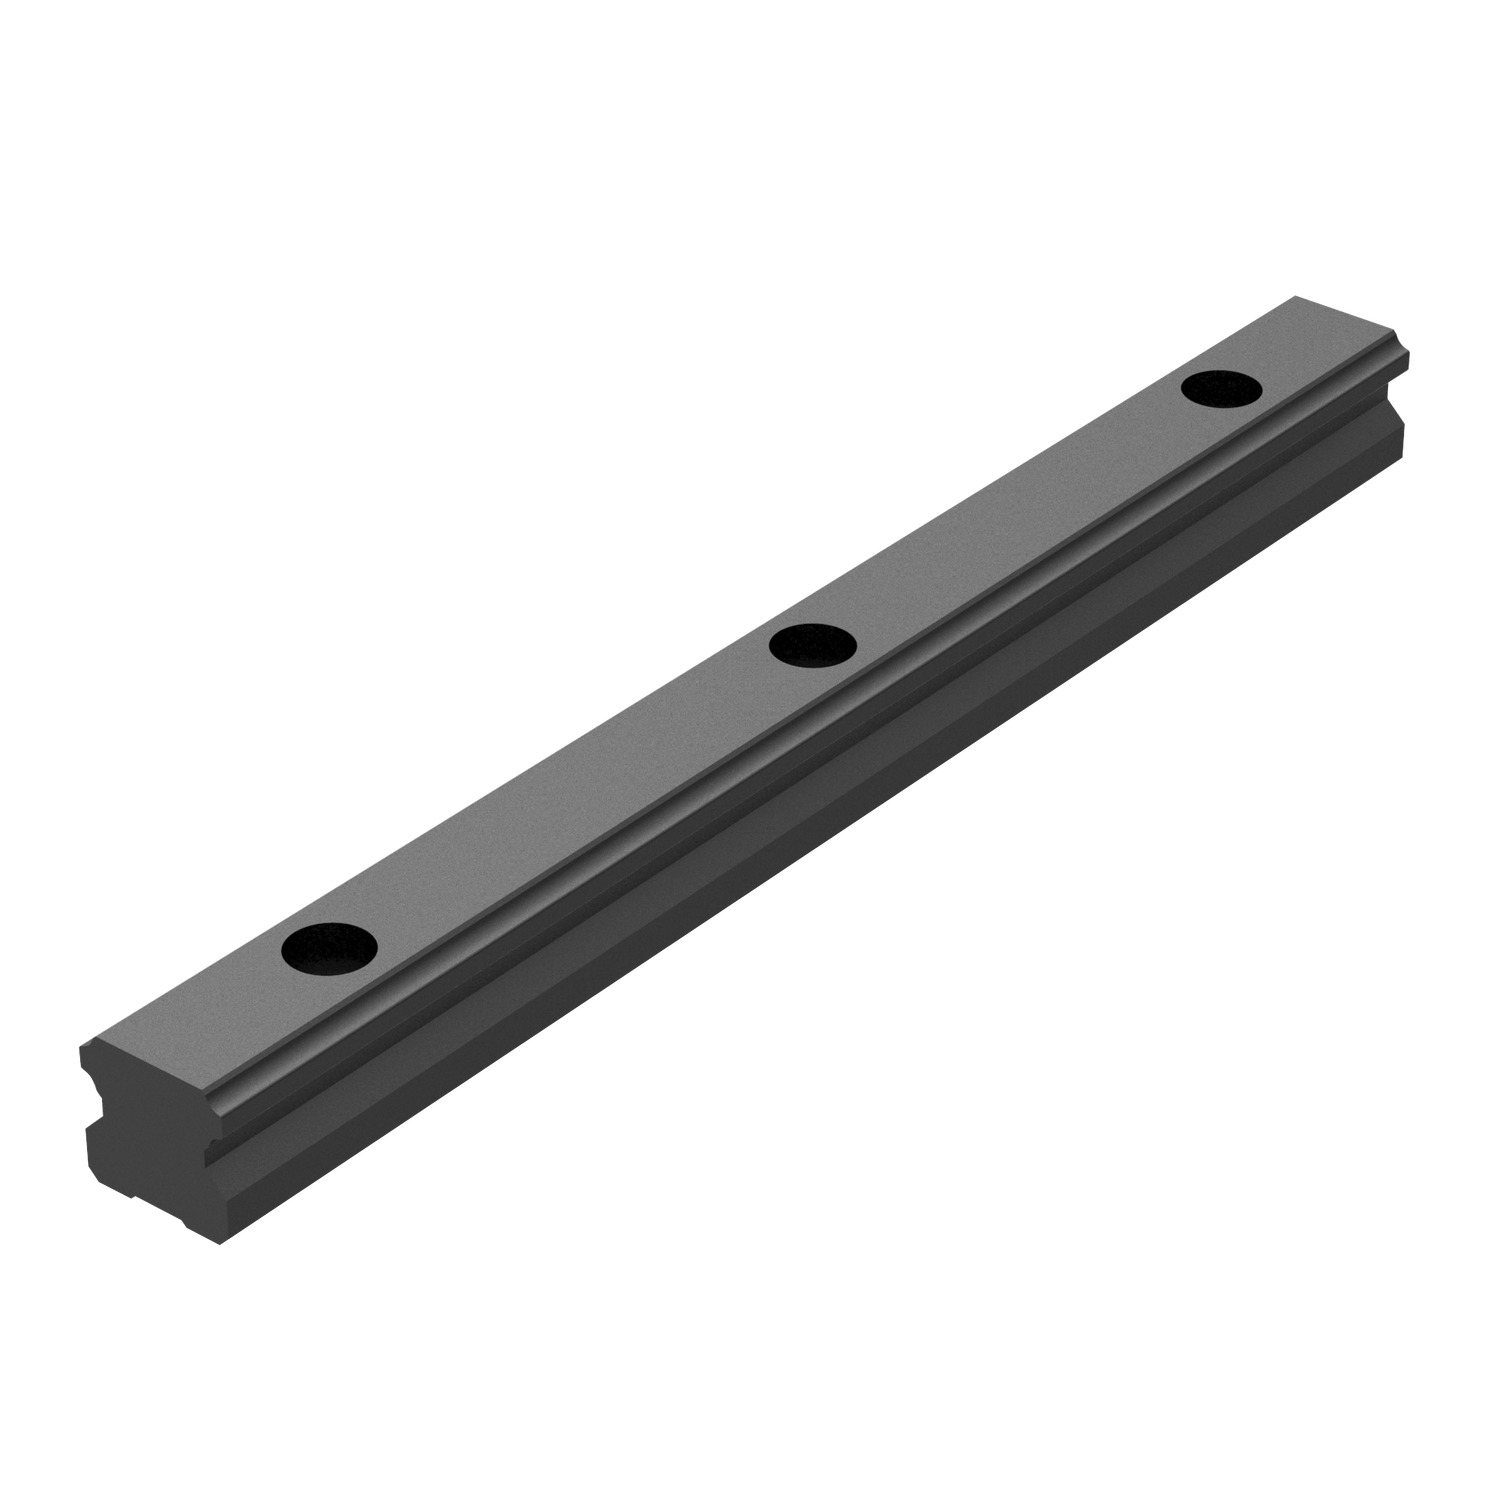 L1016.BL - 25mm Linear Guide Rail